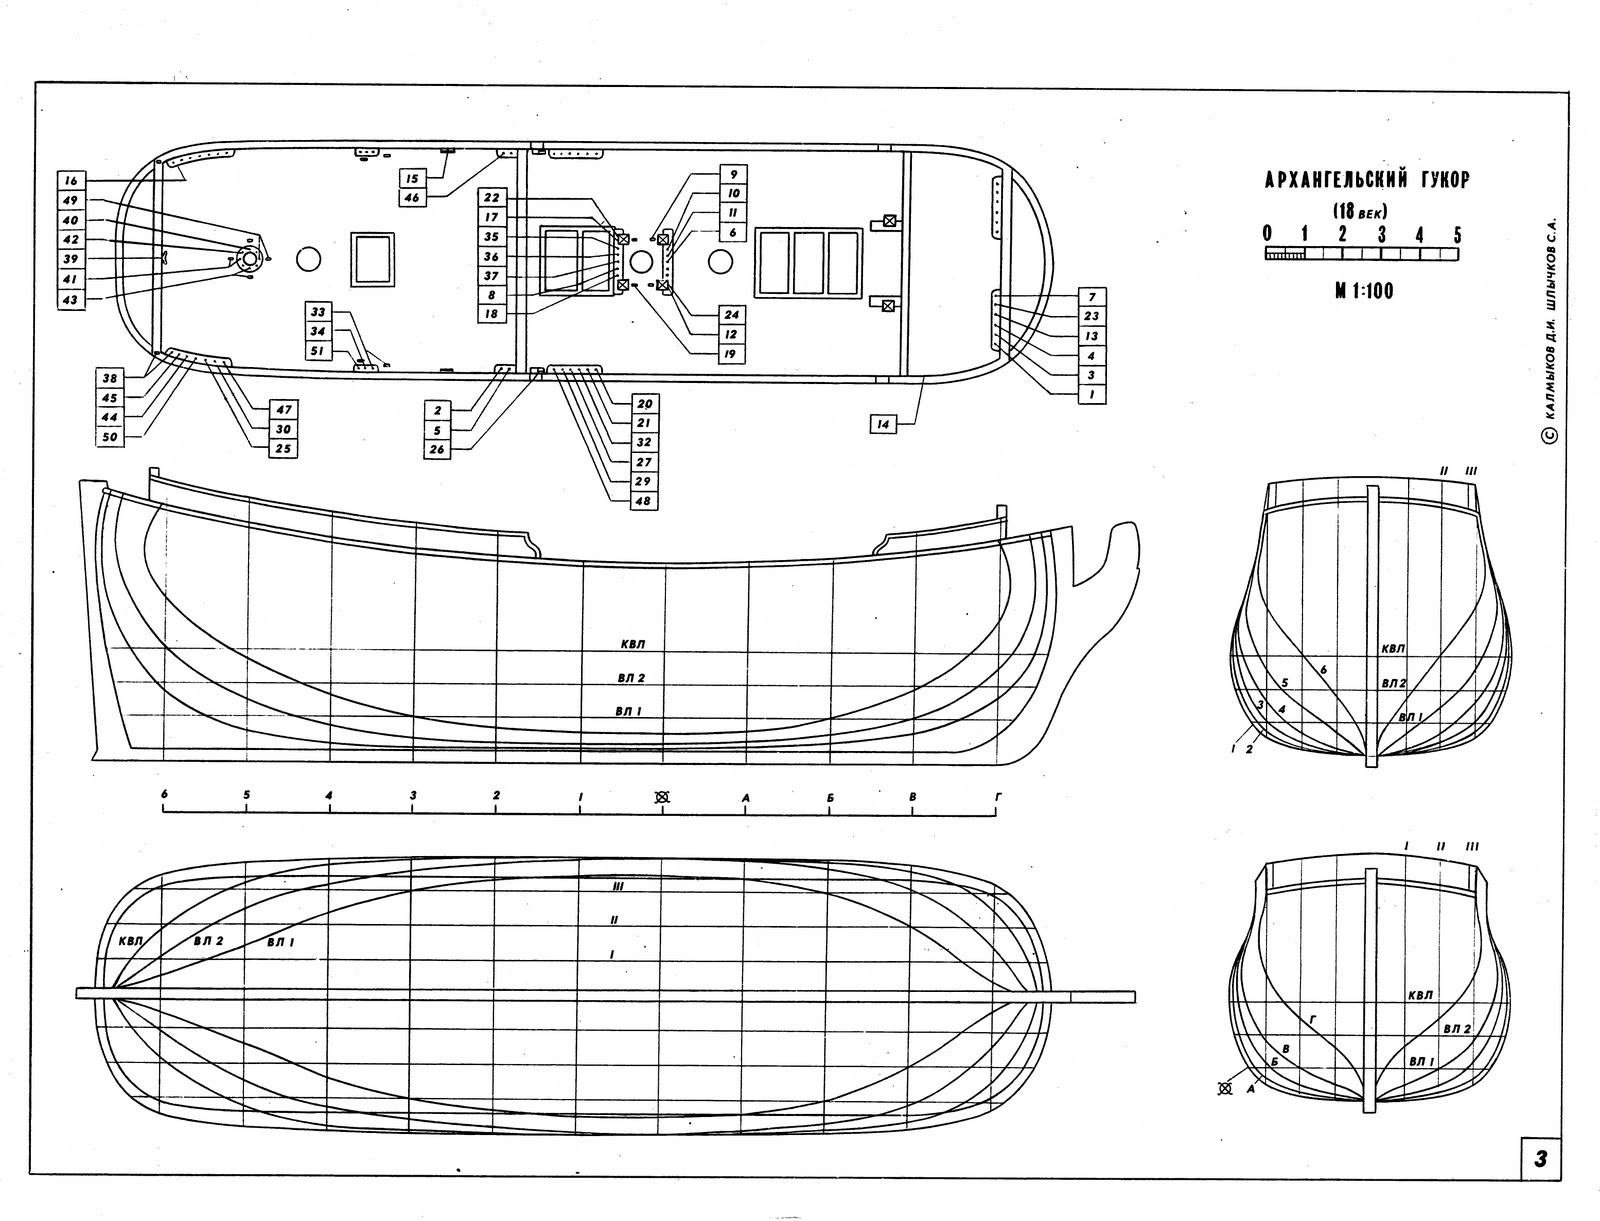 Free rc hydroplane boat plans | Beks